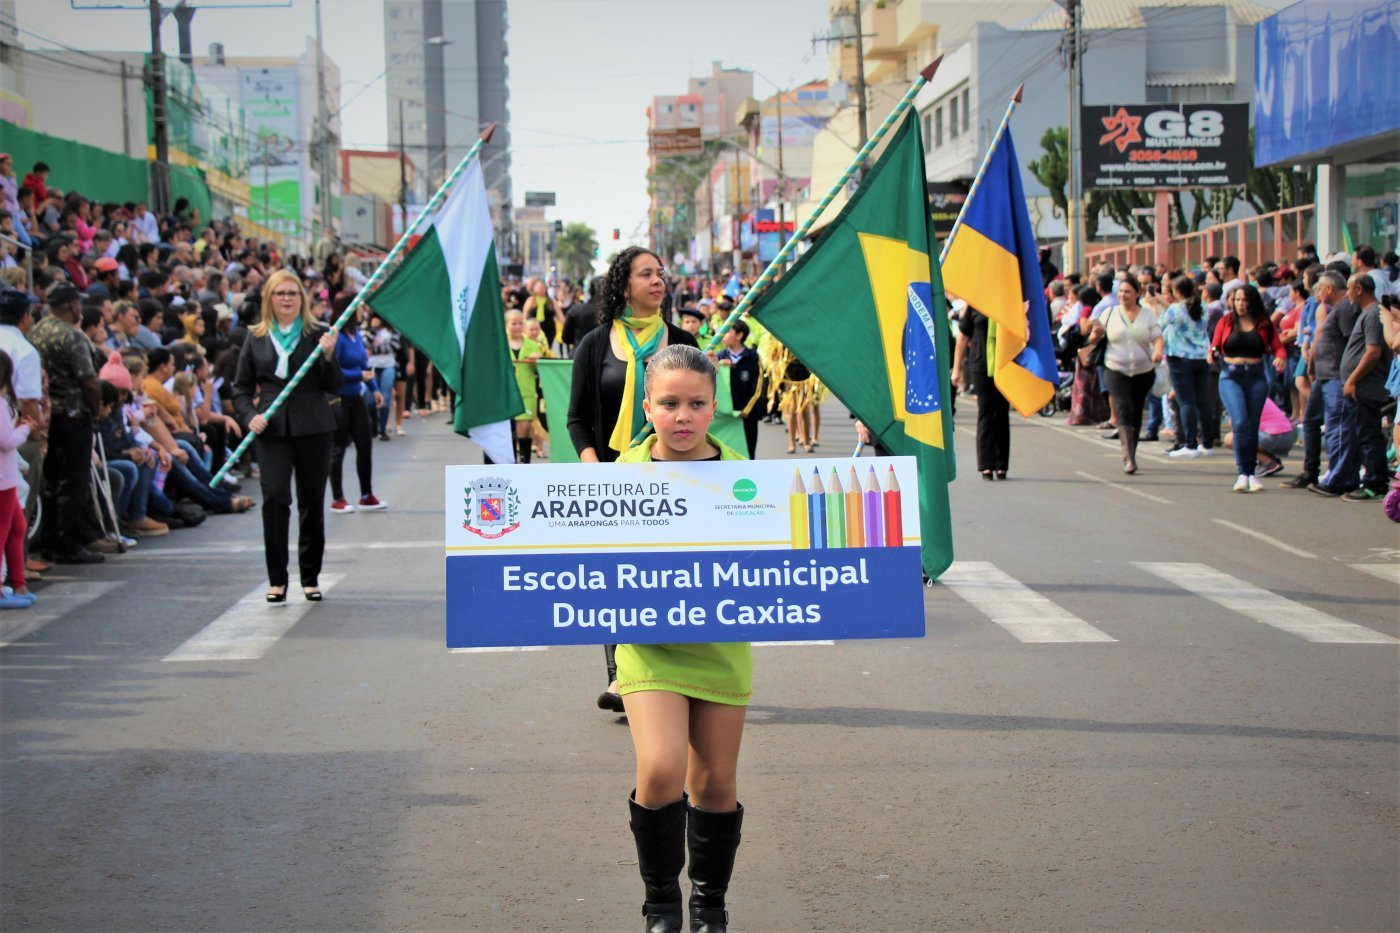 7 de Setembro: Arapongas prepara desfile em comemoração aos 200 anos da Independência do Brasil